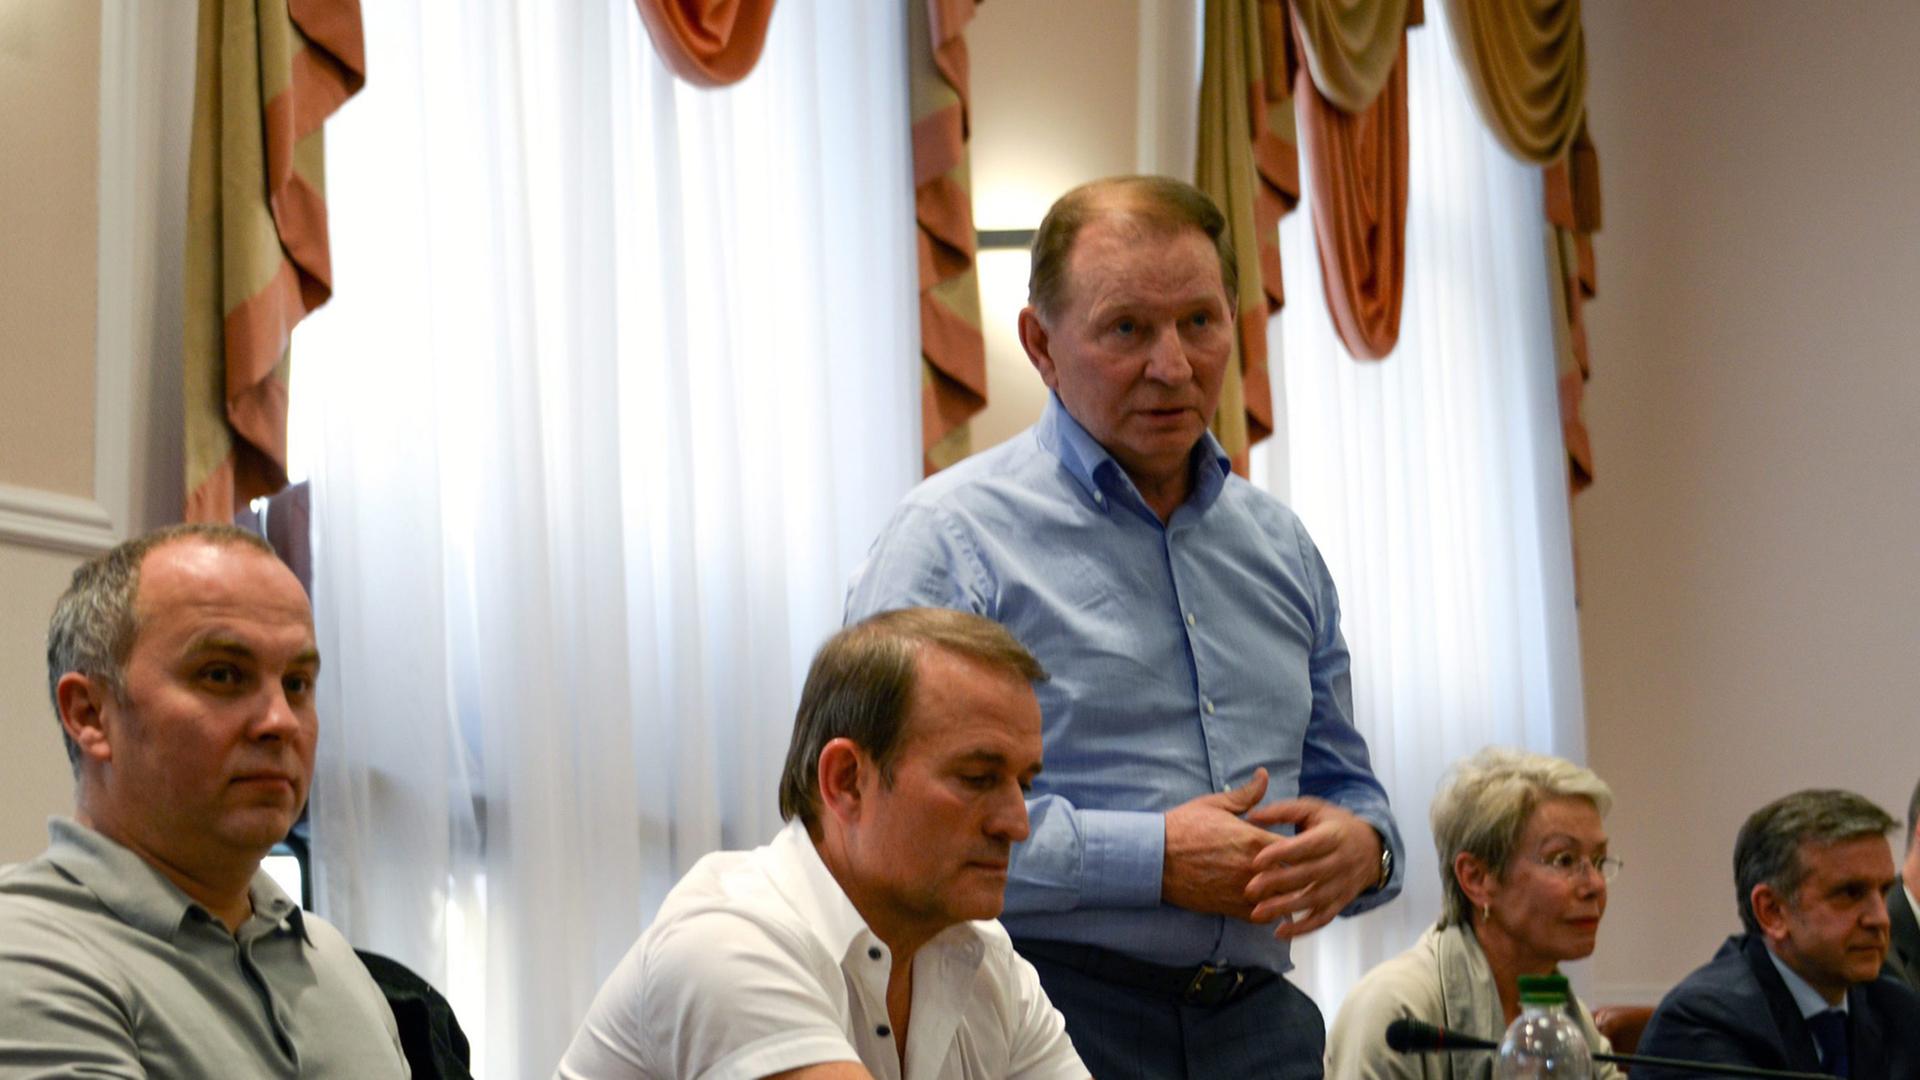 An einem Tisch sitzen Nestor Shufrich als Vertreter der ukrainischen Regierung, Viktor Medwedtschuk, eine Frau und ein Mann, in der Mitte zwischen ihnen steht Leonid Kutschma.